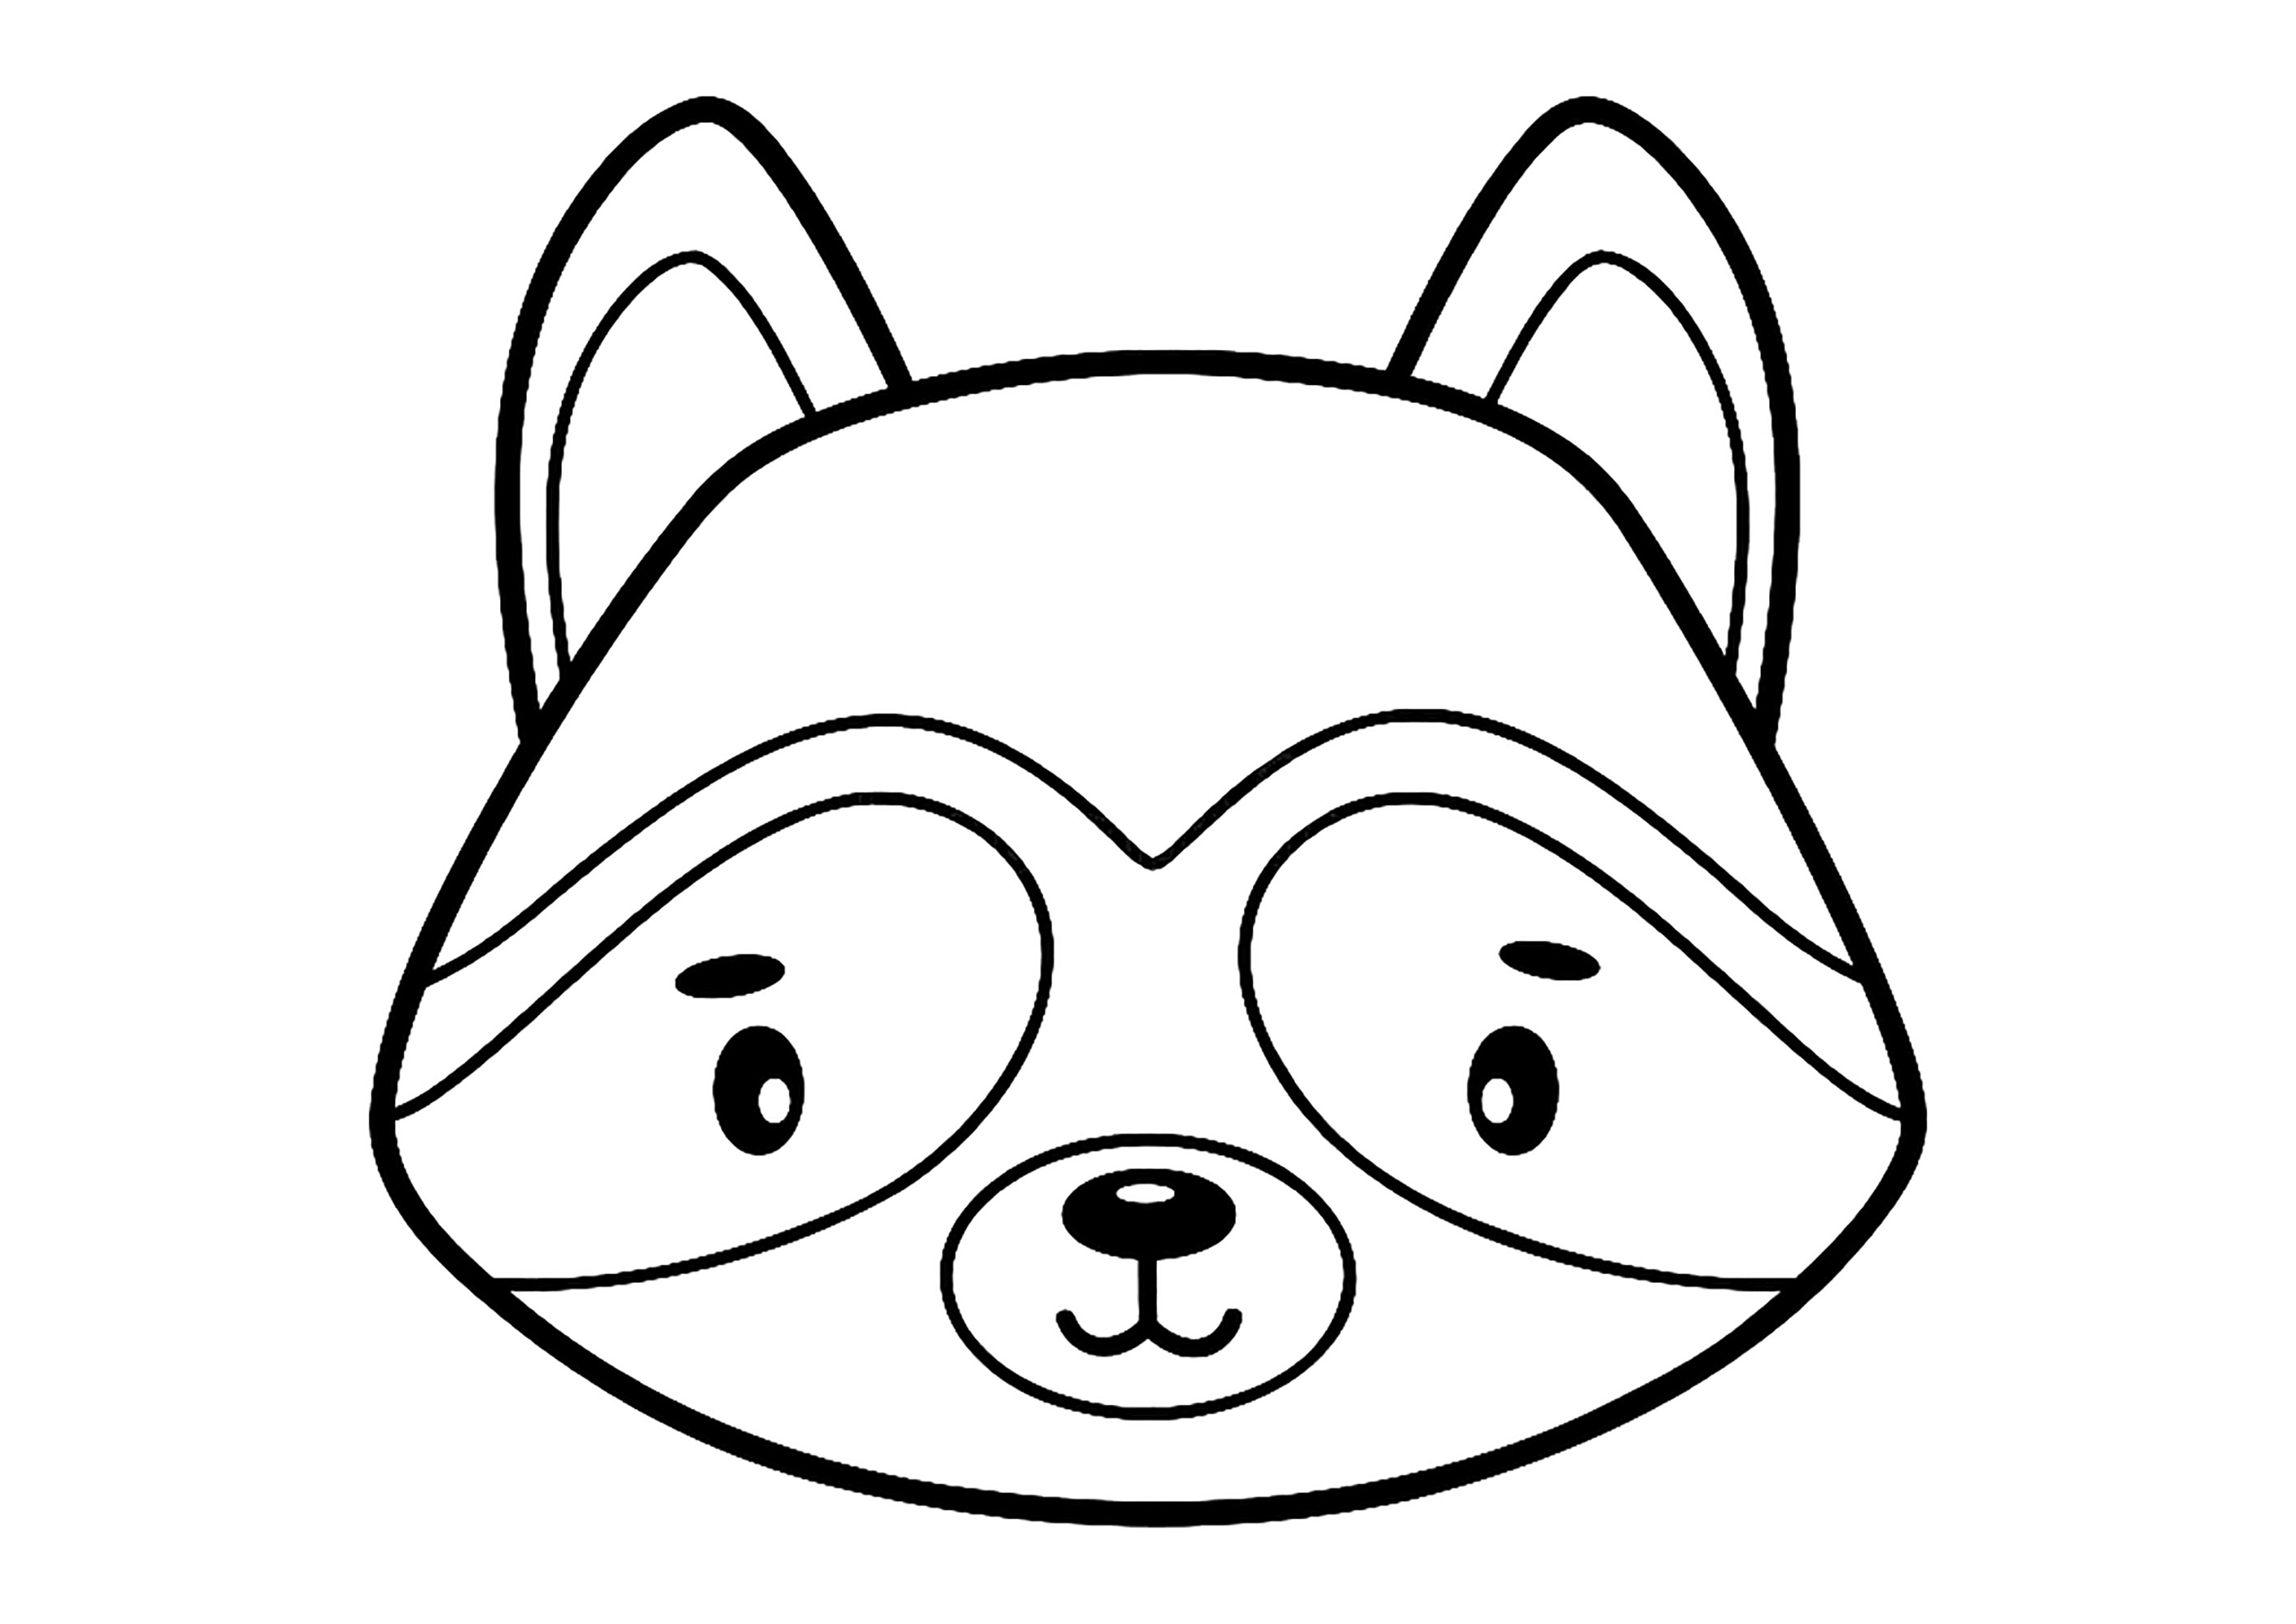 Raccoon head